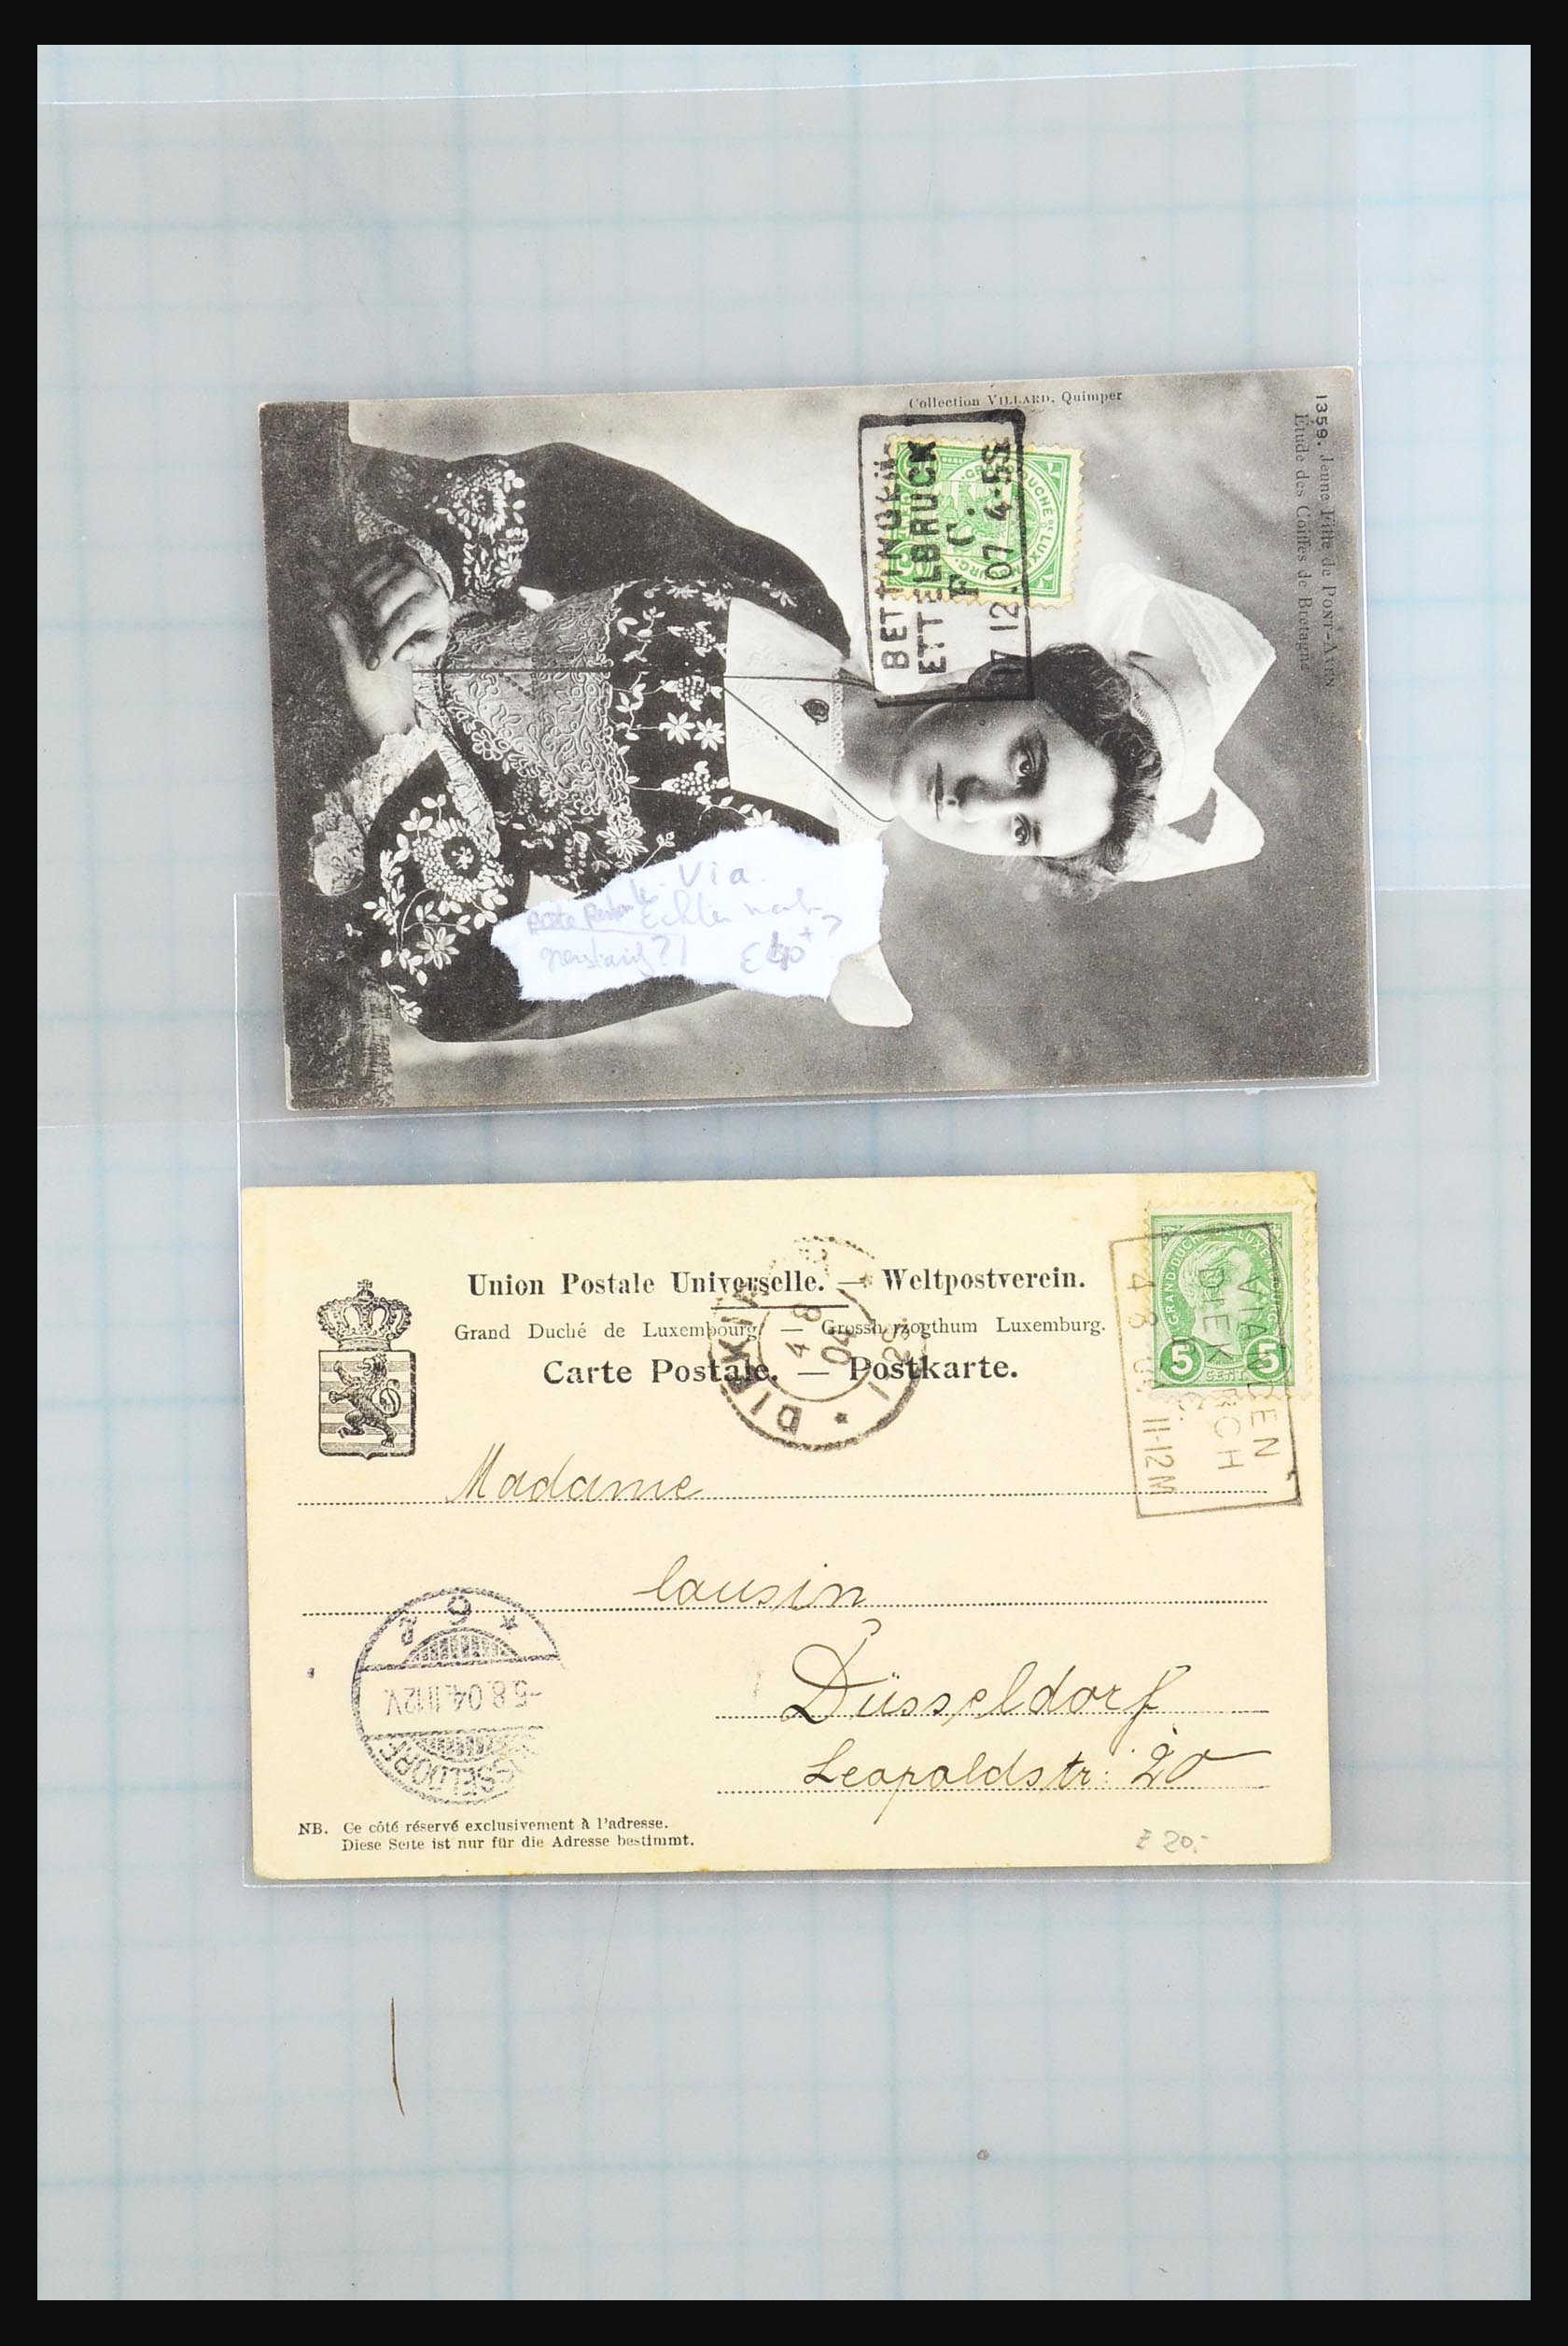 31358 081 - 31358 Portugal/Luxemburg/Griekenland brieven 1880-1960.